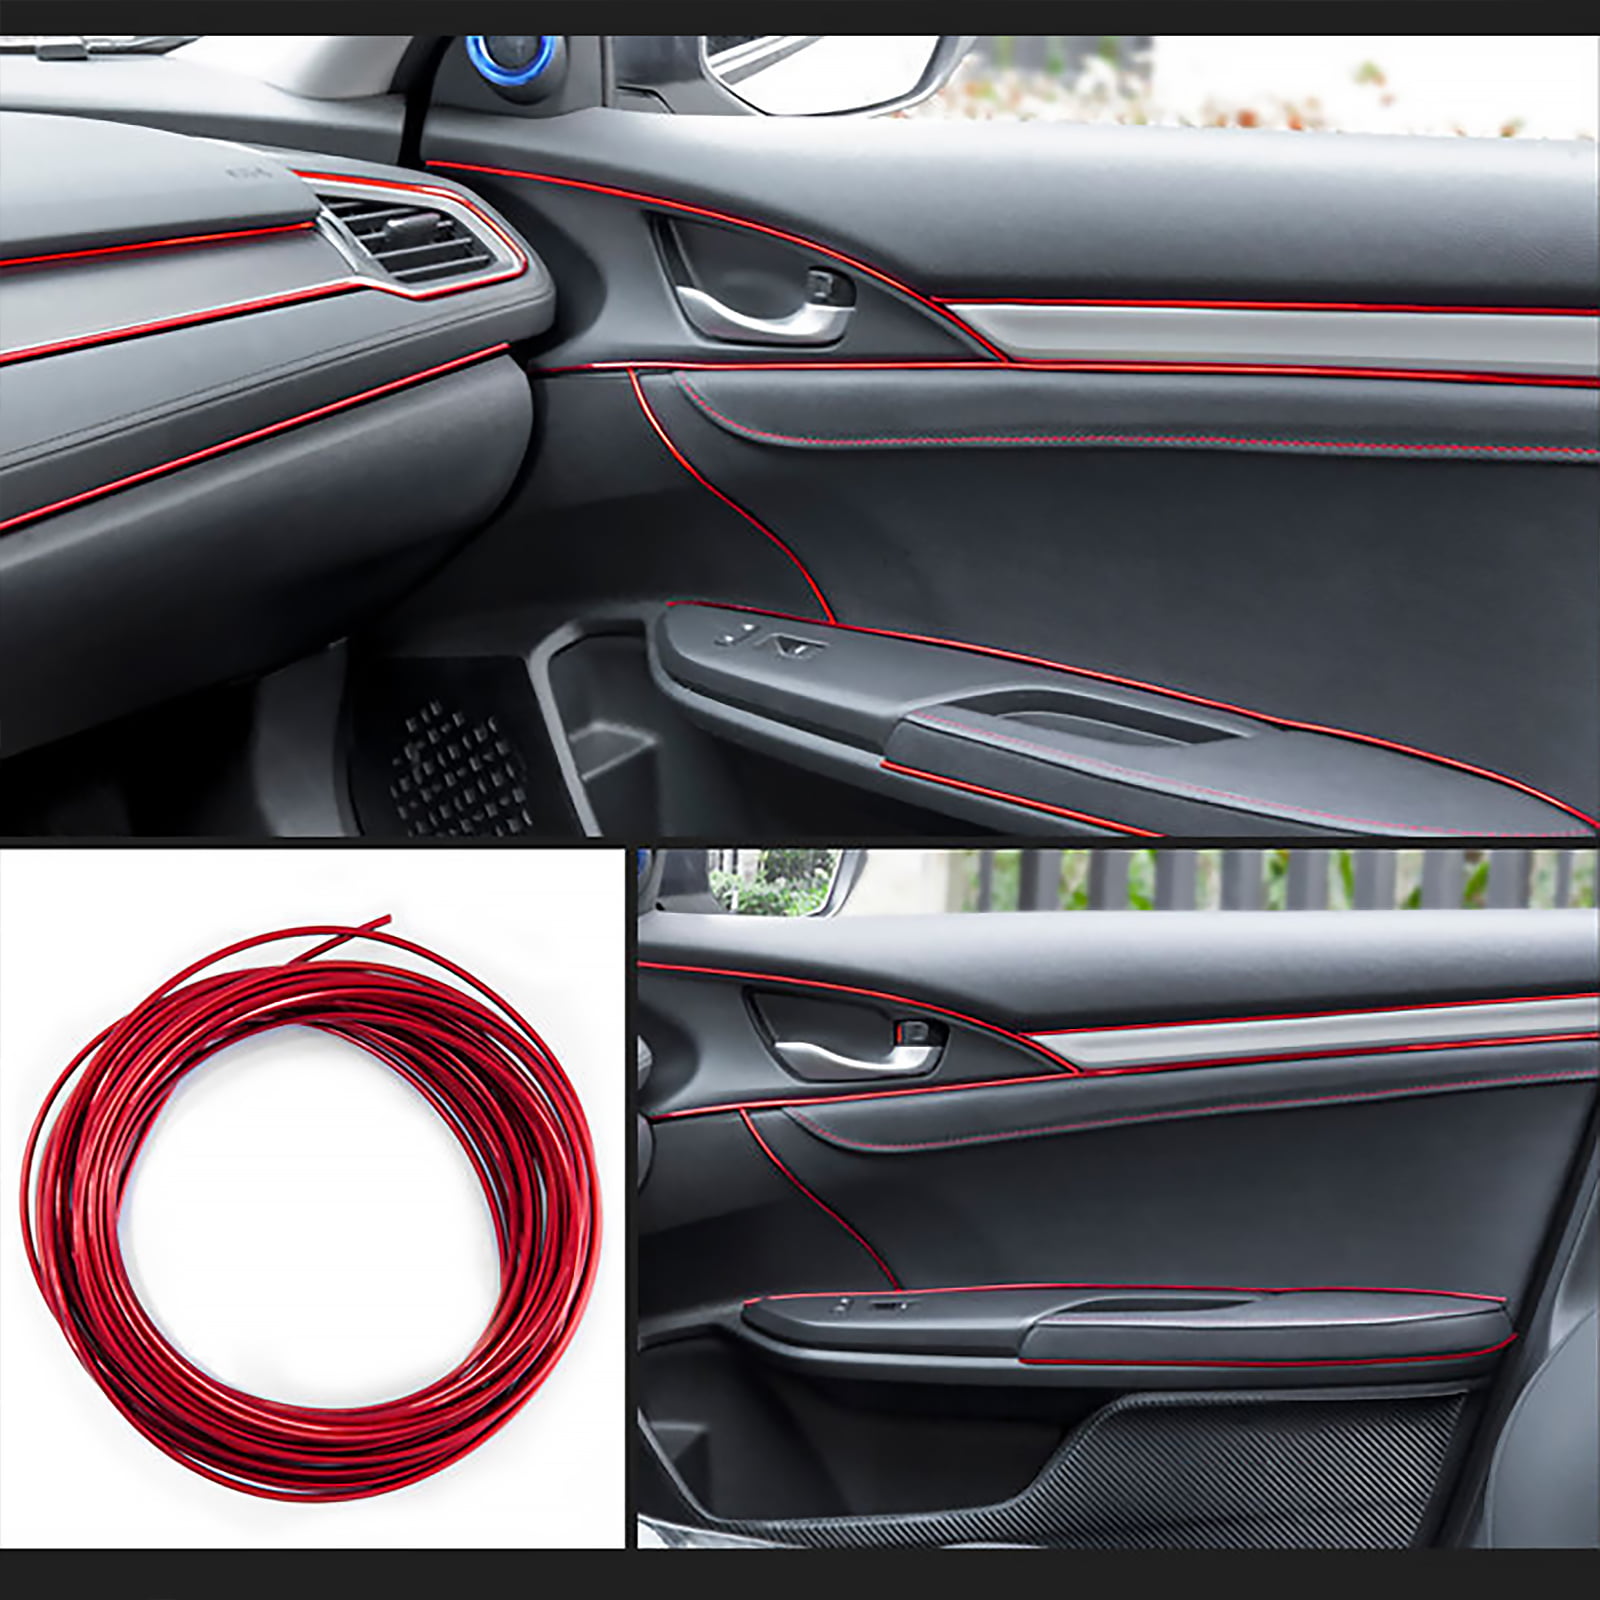 3D DIY Automobile voiture automobile Intérieur Décoration extérieure moulure bande ligne autocollant Insert type décoration-Rouge Voiture Intérieur moulure